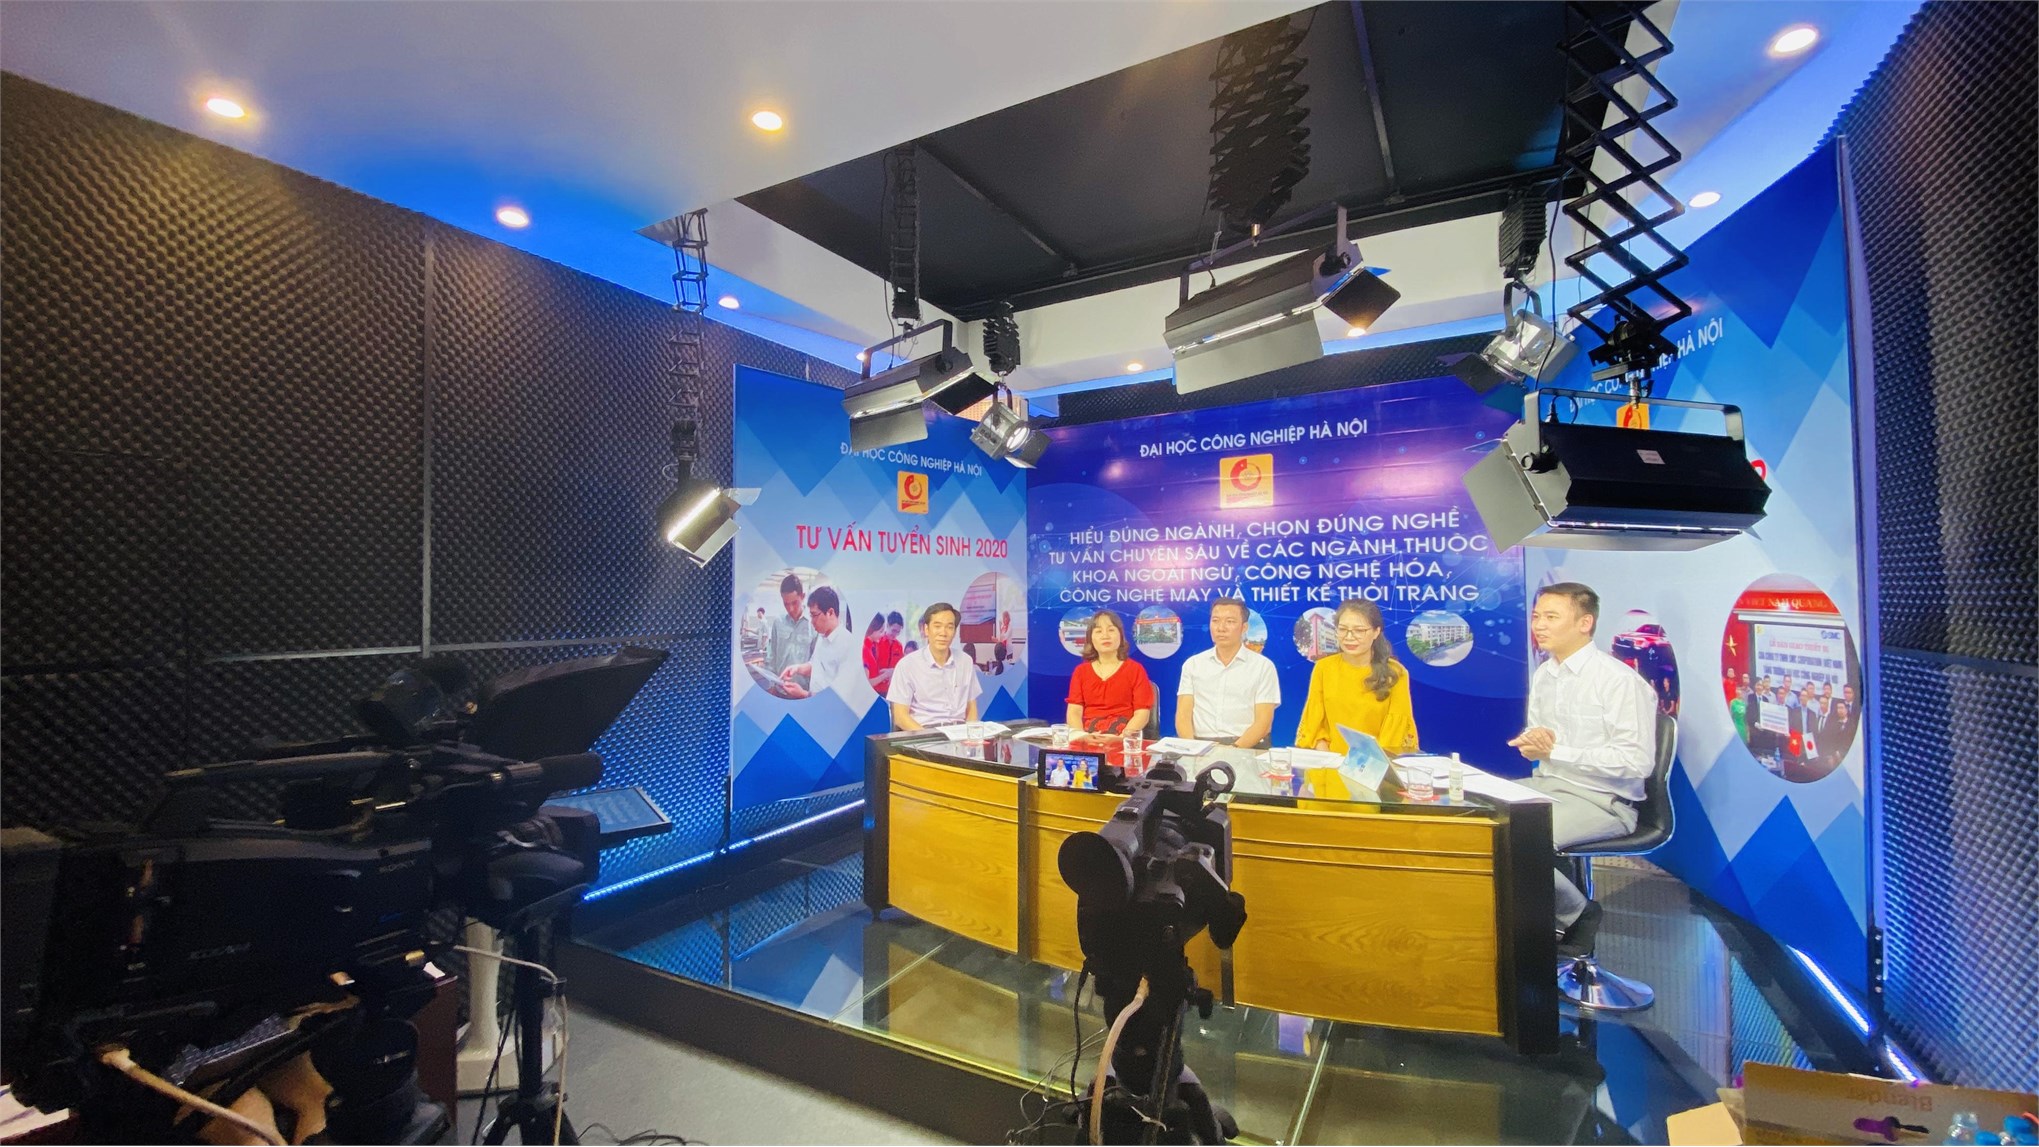 Vai trò của truyền thông trong công tác tuyển sinh tại trường Đại học Công nghiệp Hà Nội